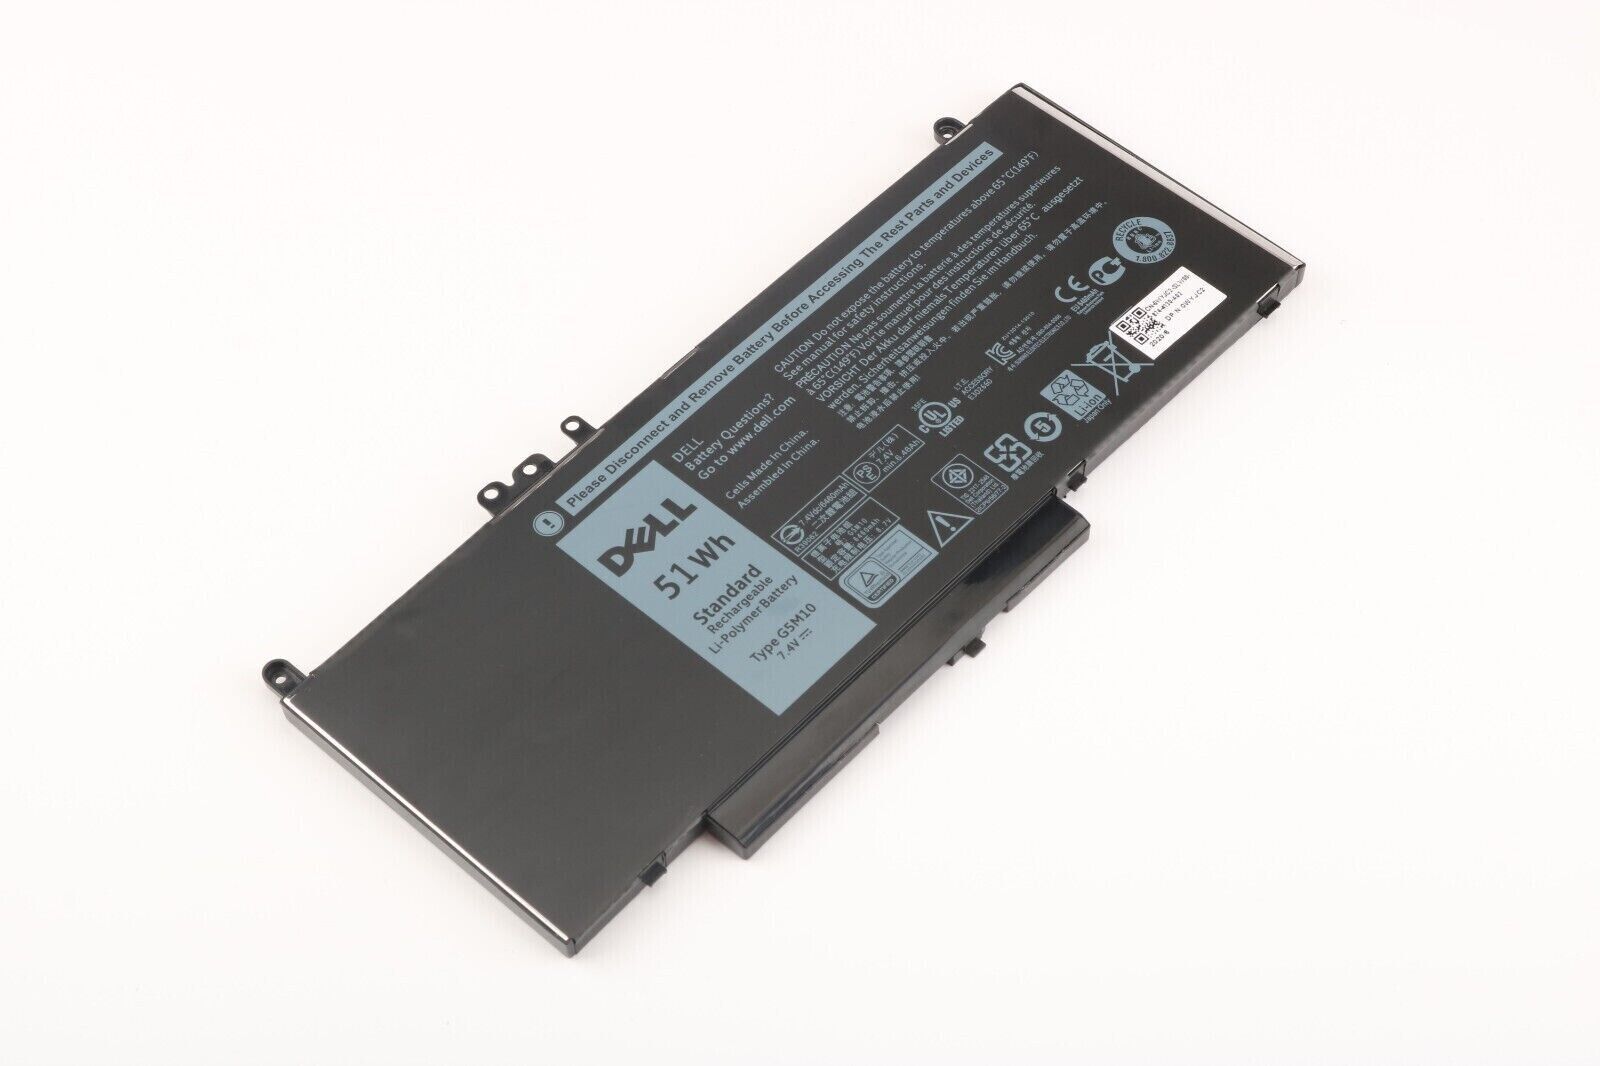 NEW OEM 51WH G5M10 Battery for Dell Latitude E5450 E5270 E5550 79VRK 1KY05 8V5GX